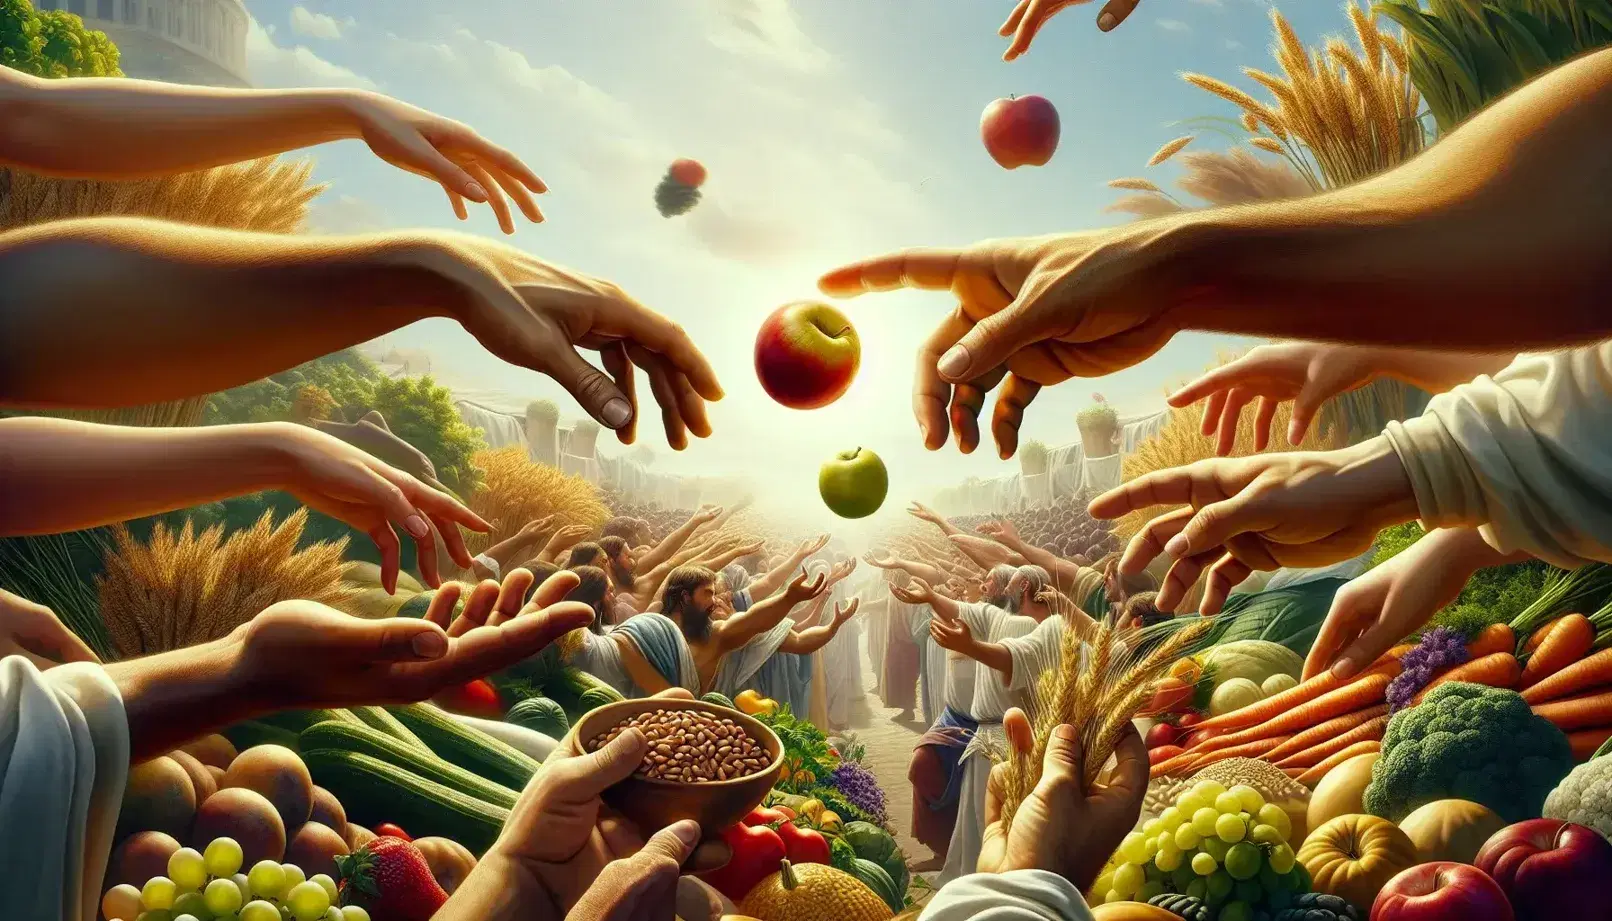 Manos de diversas tonalidades intercambiando productos agrícolas como una manzana, uvas, zanahoria y trigo en un mercado al aire libre.